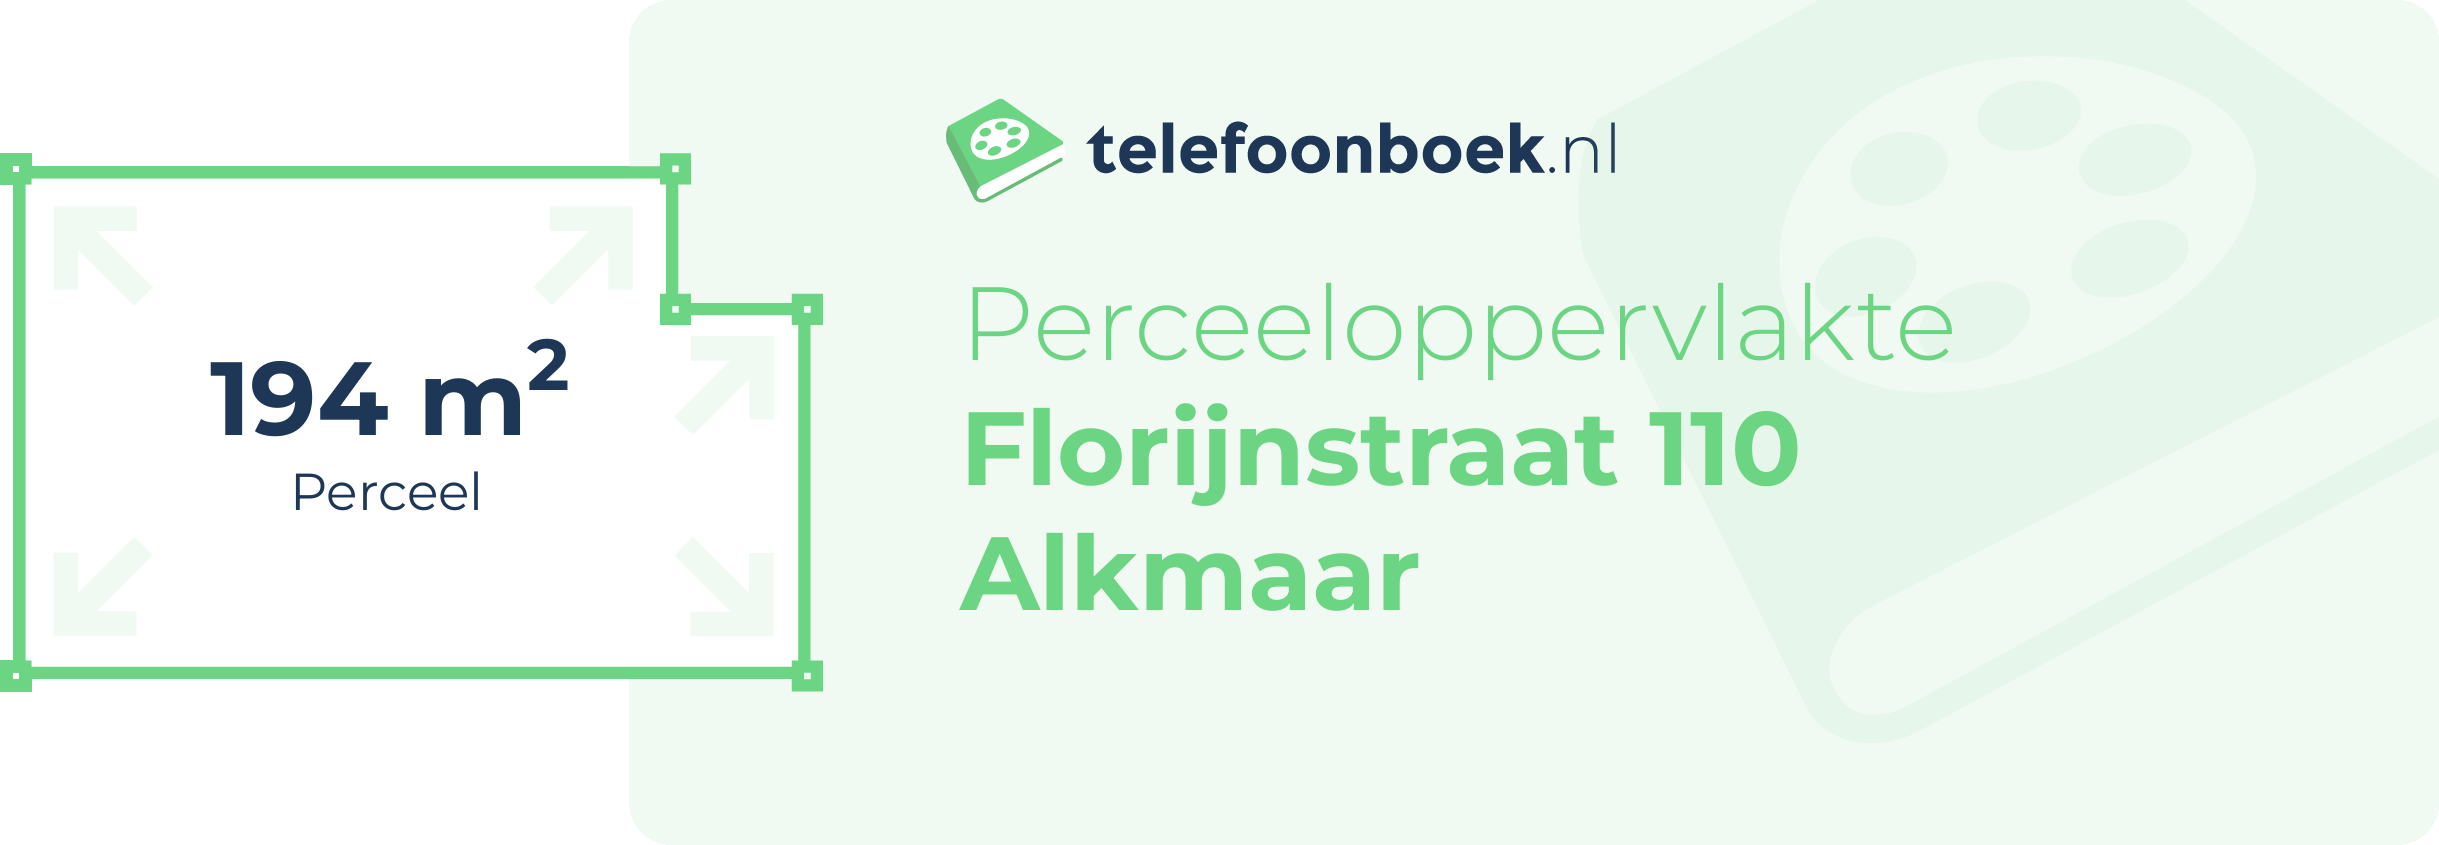 Perceeloppervlakte Florijnstraat 110 Alkmaar